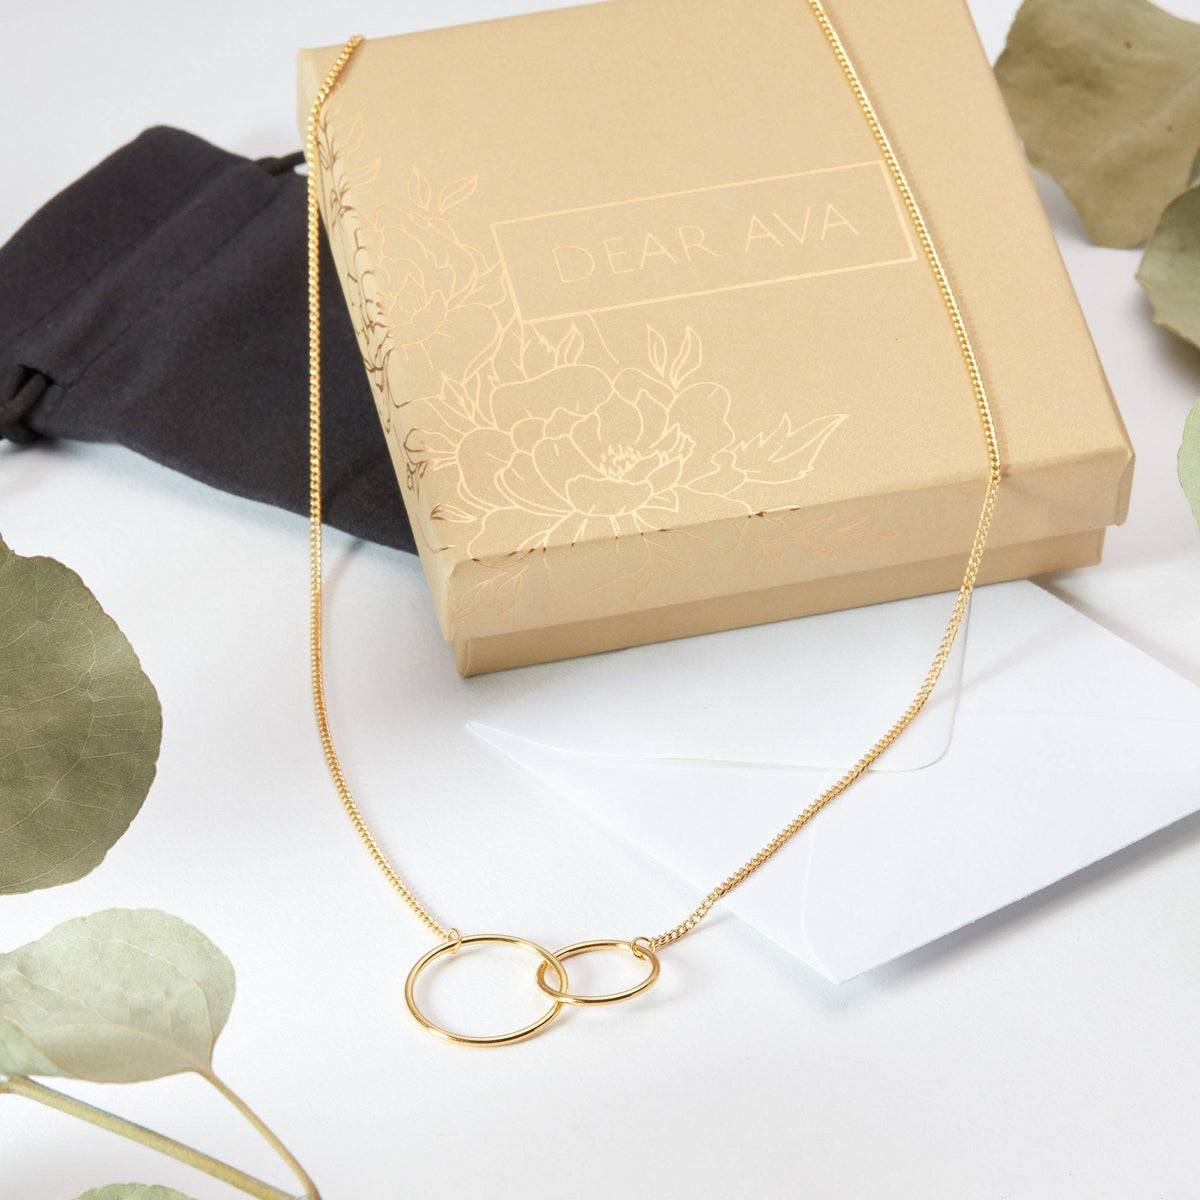 Nonna Gift Necklace - Dear Ava